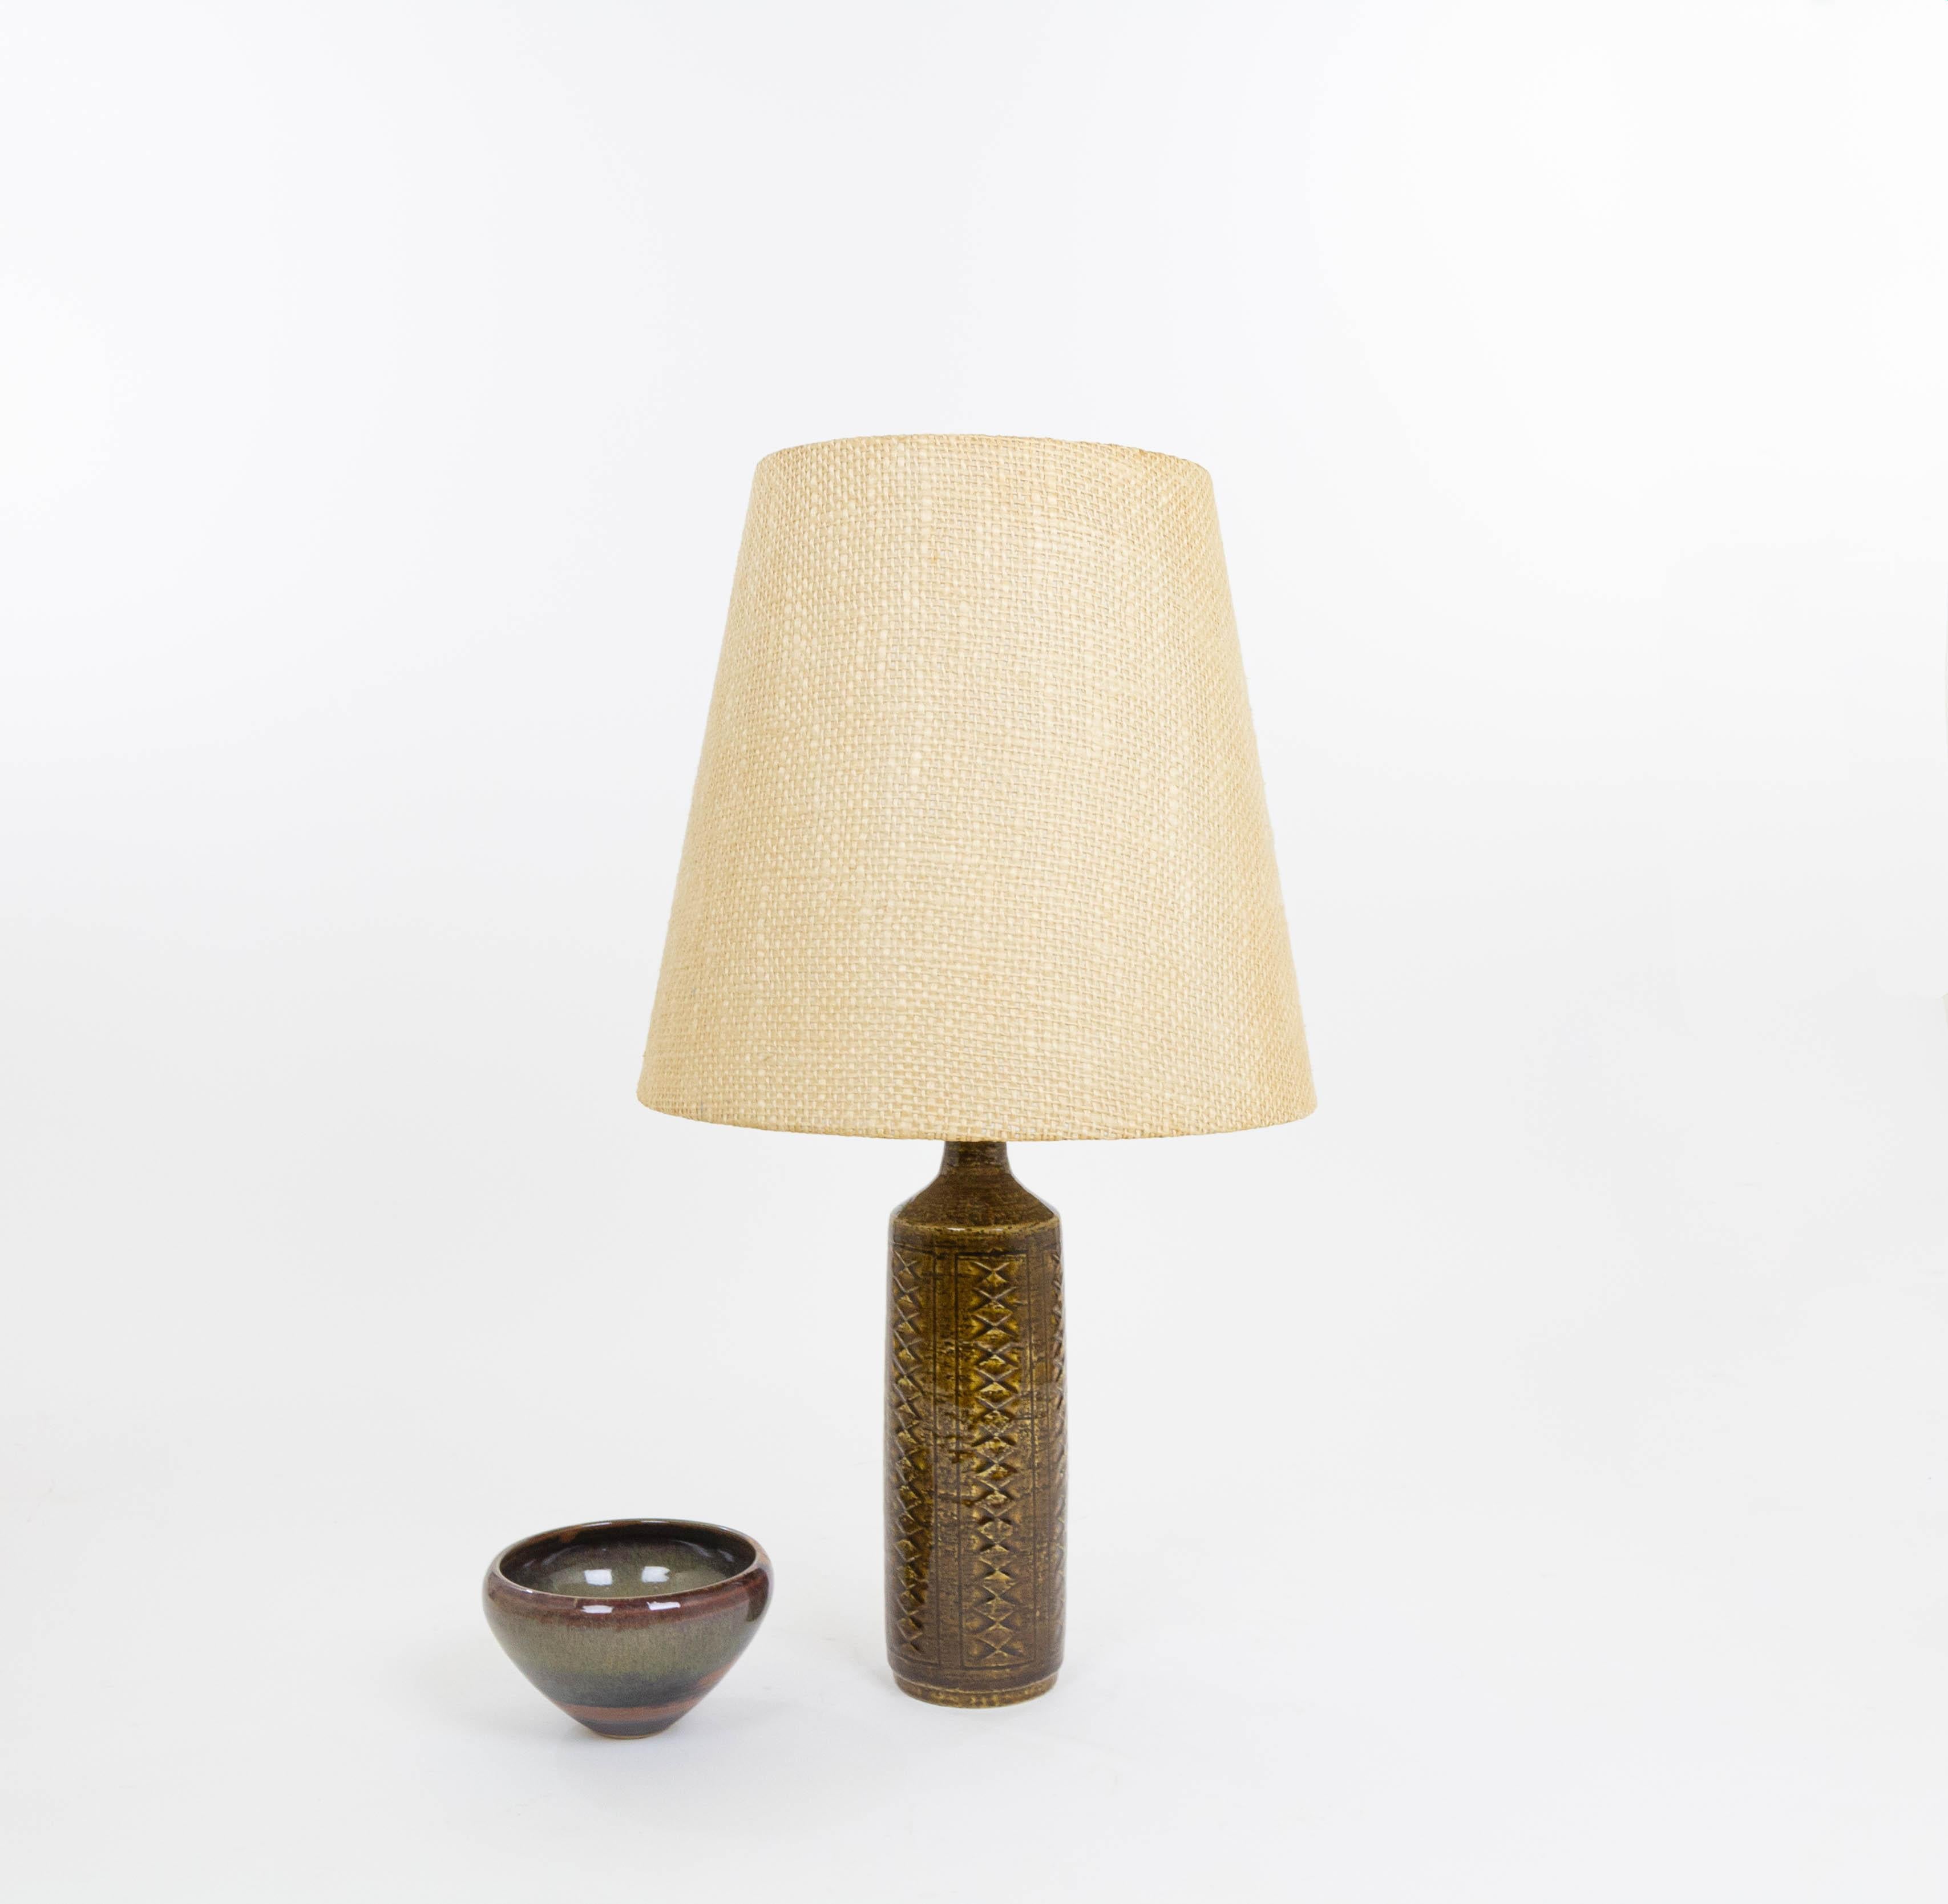 Glazed Chestnut Brown DL/27 table lamp by Linnemann-Schmidt for Palshus, 1960s For Sale